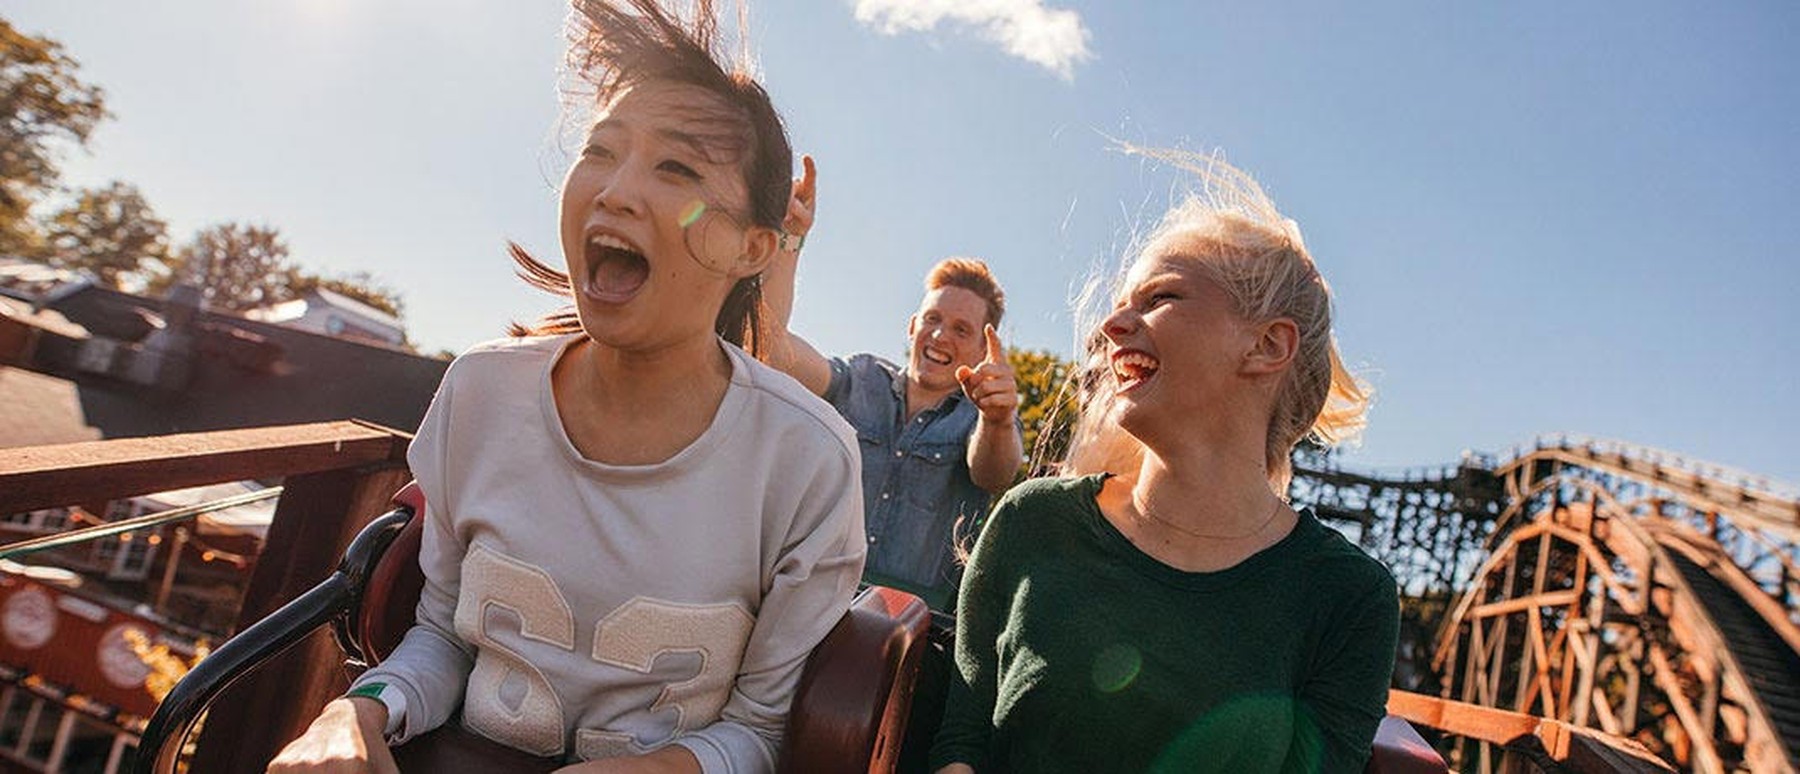 Twee vrouwen kijken blij in een achtbaan